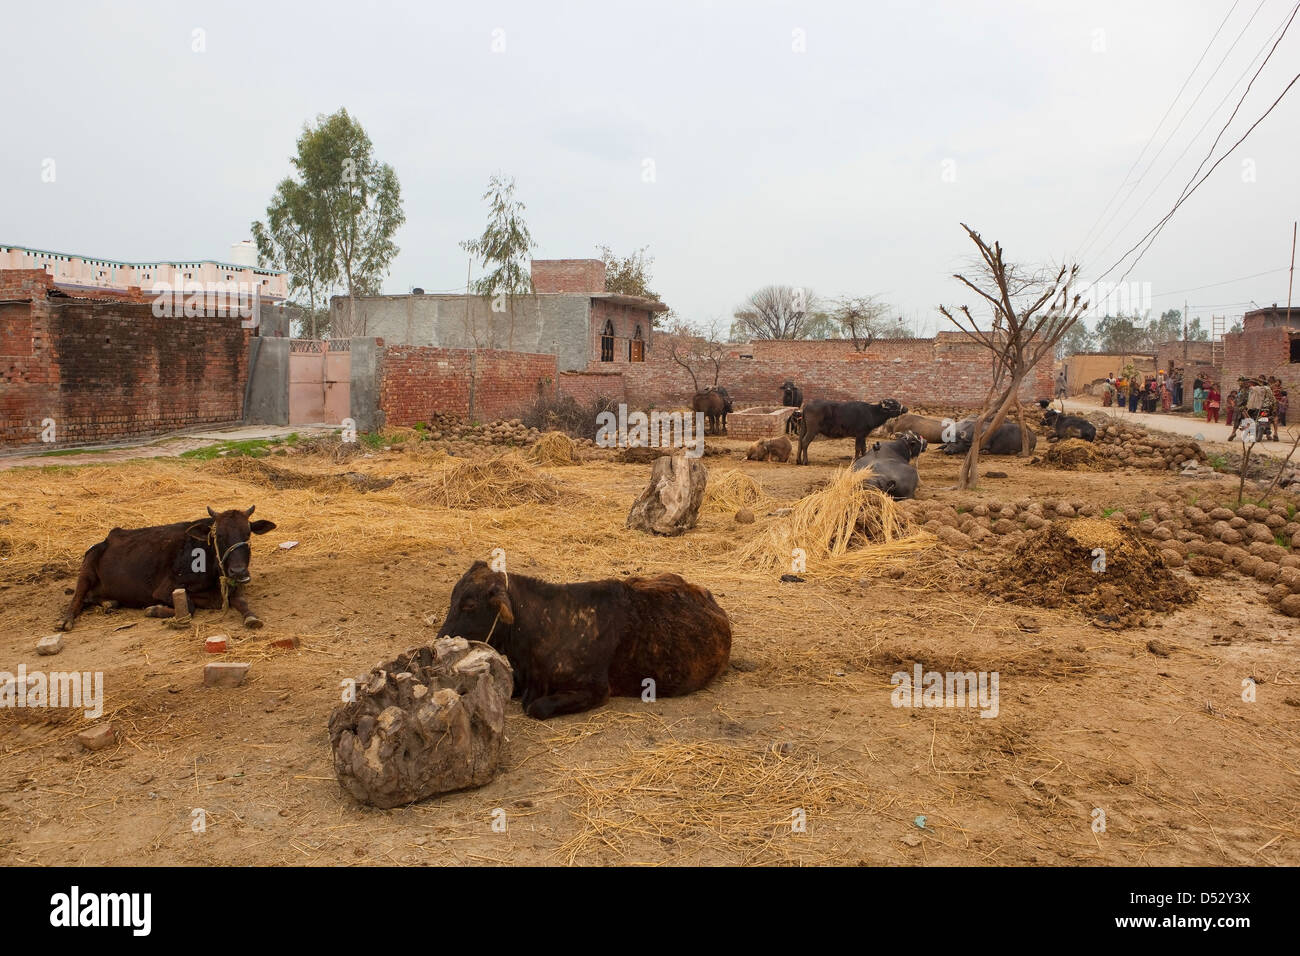 Une ferme traditionnelle en milieu rural avec les bovins du Punjab, bâtiments de ferme au repos et d'arbres et d'un groupe de villageois dans la distance. Banque D'Images